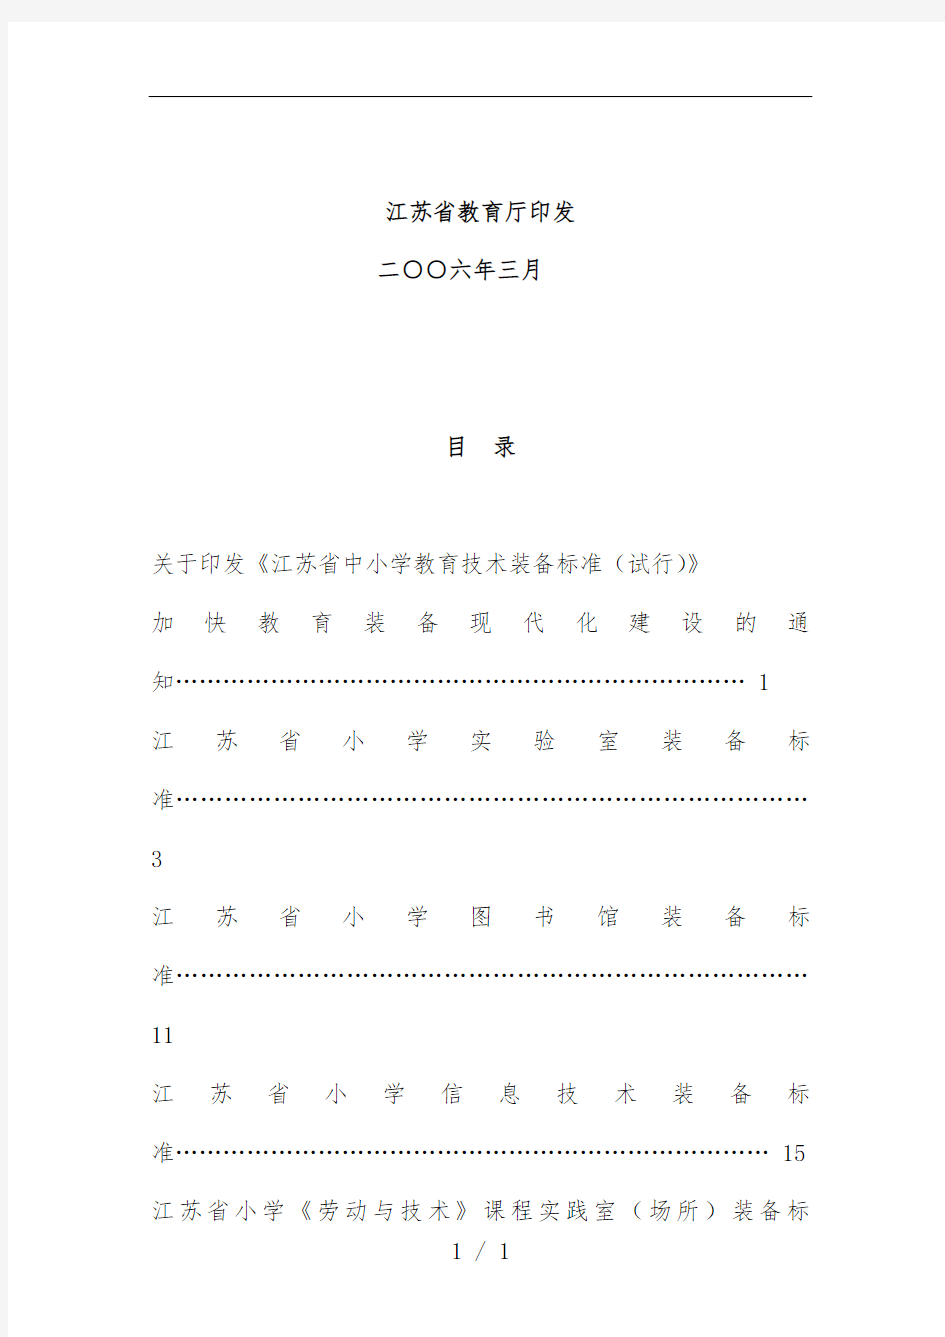 江苏省中小学教育技术规范管理装备标准